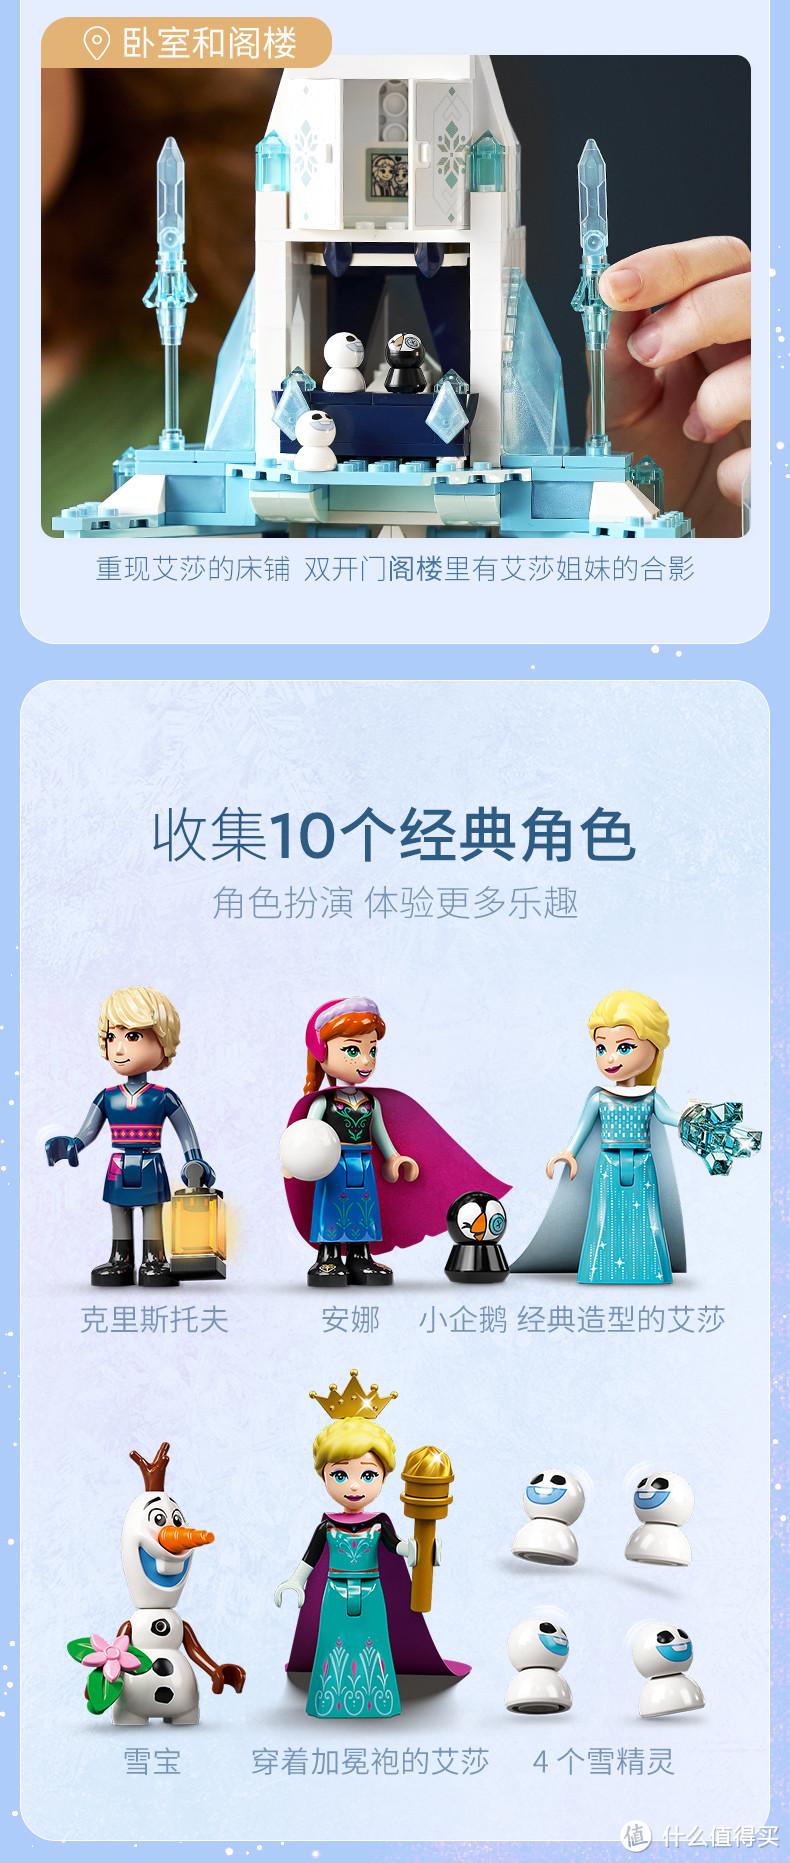 这款套装内包含迪士尼安娜、2 个版本的艾莎、克斯托夫和雪宝，以及 4 个乐高 Snowgie 玩偶